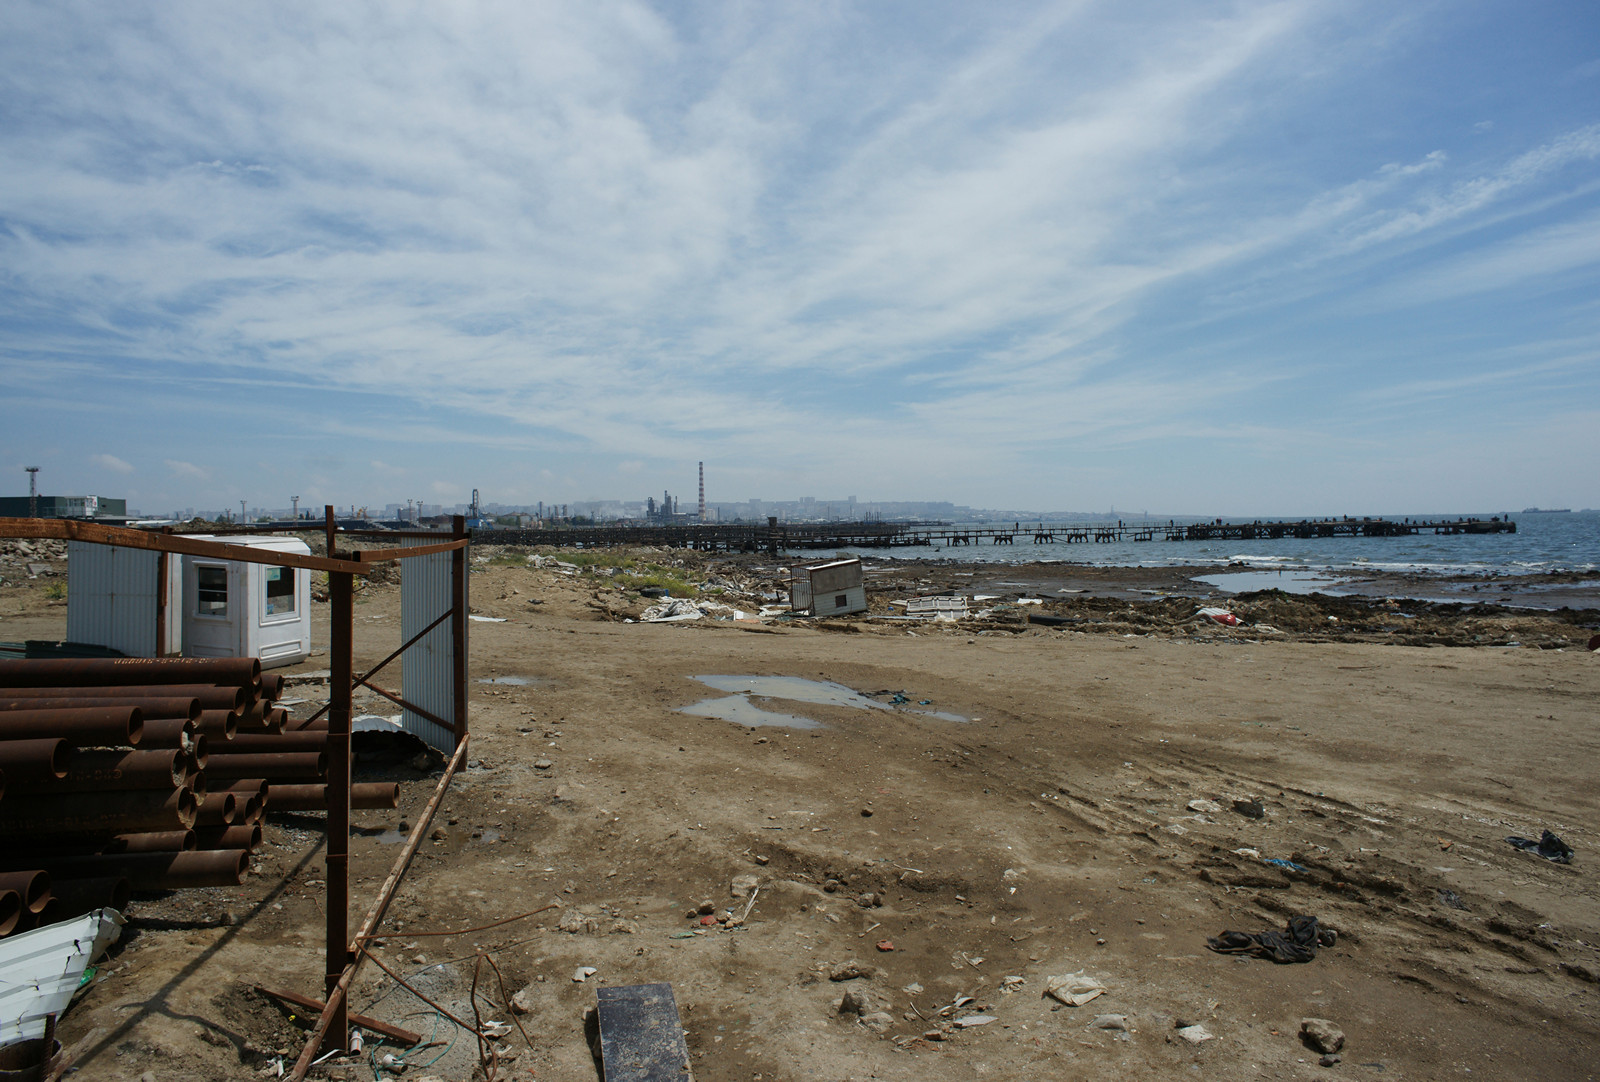 Регенерация промышленной прибрежной морской зоны города Баку под общественные пространства